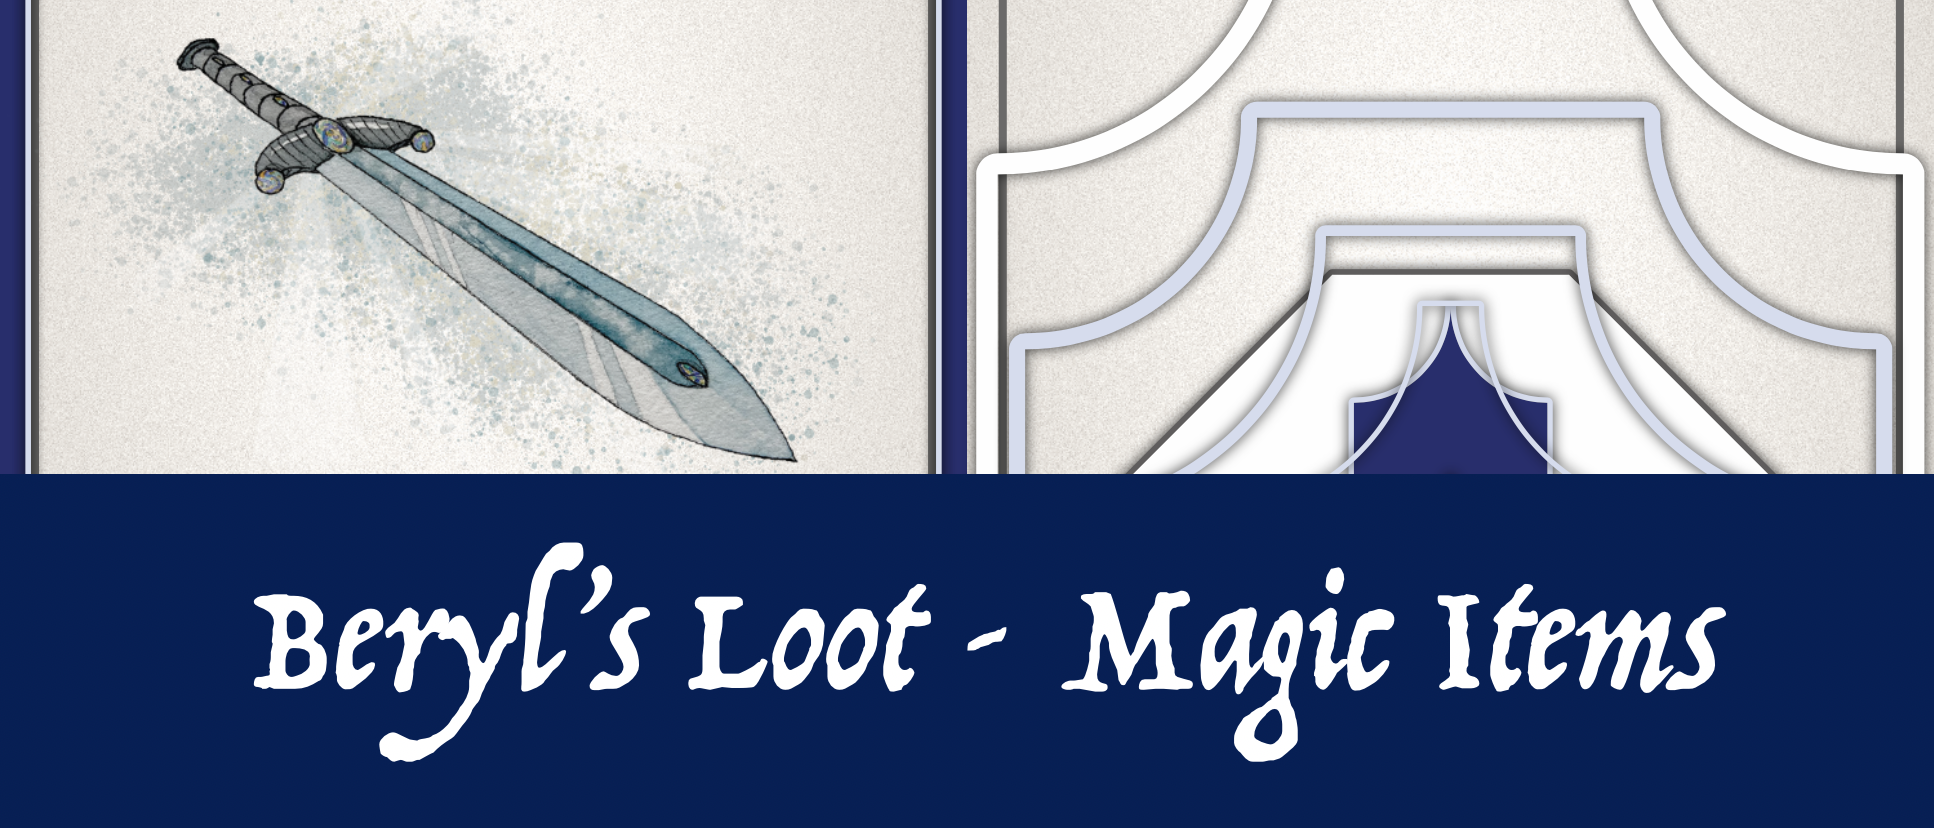 Beryl's Loot - Magic item cards